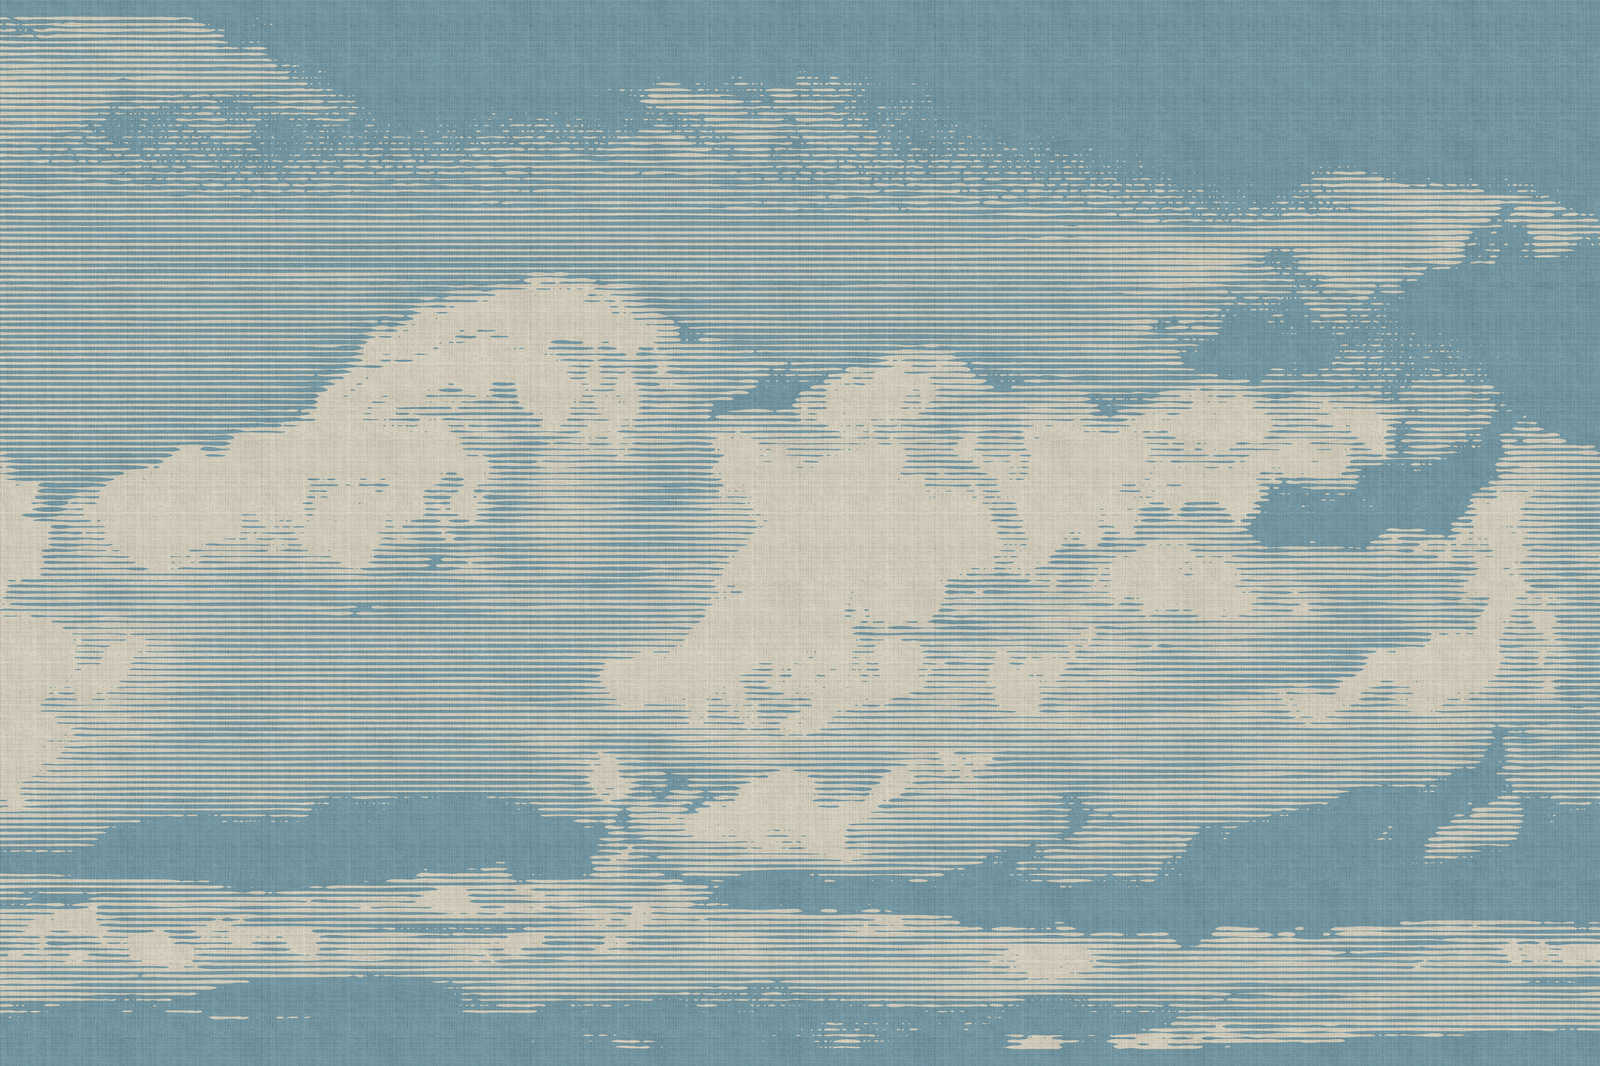             Clouds 1 - Himmlisches Leinwandbild mit Wolkenmotiv in naturleinen Optik – 0,90 m x 0,60 m
        